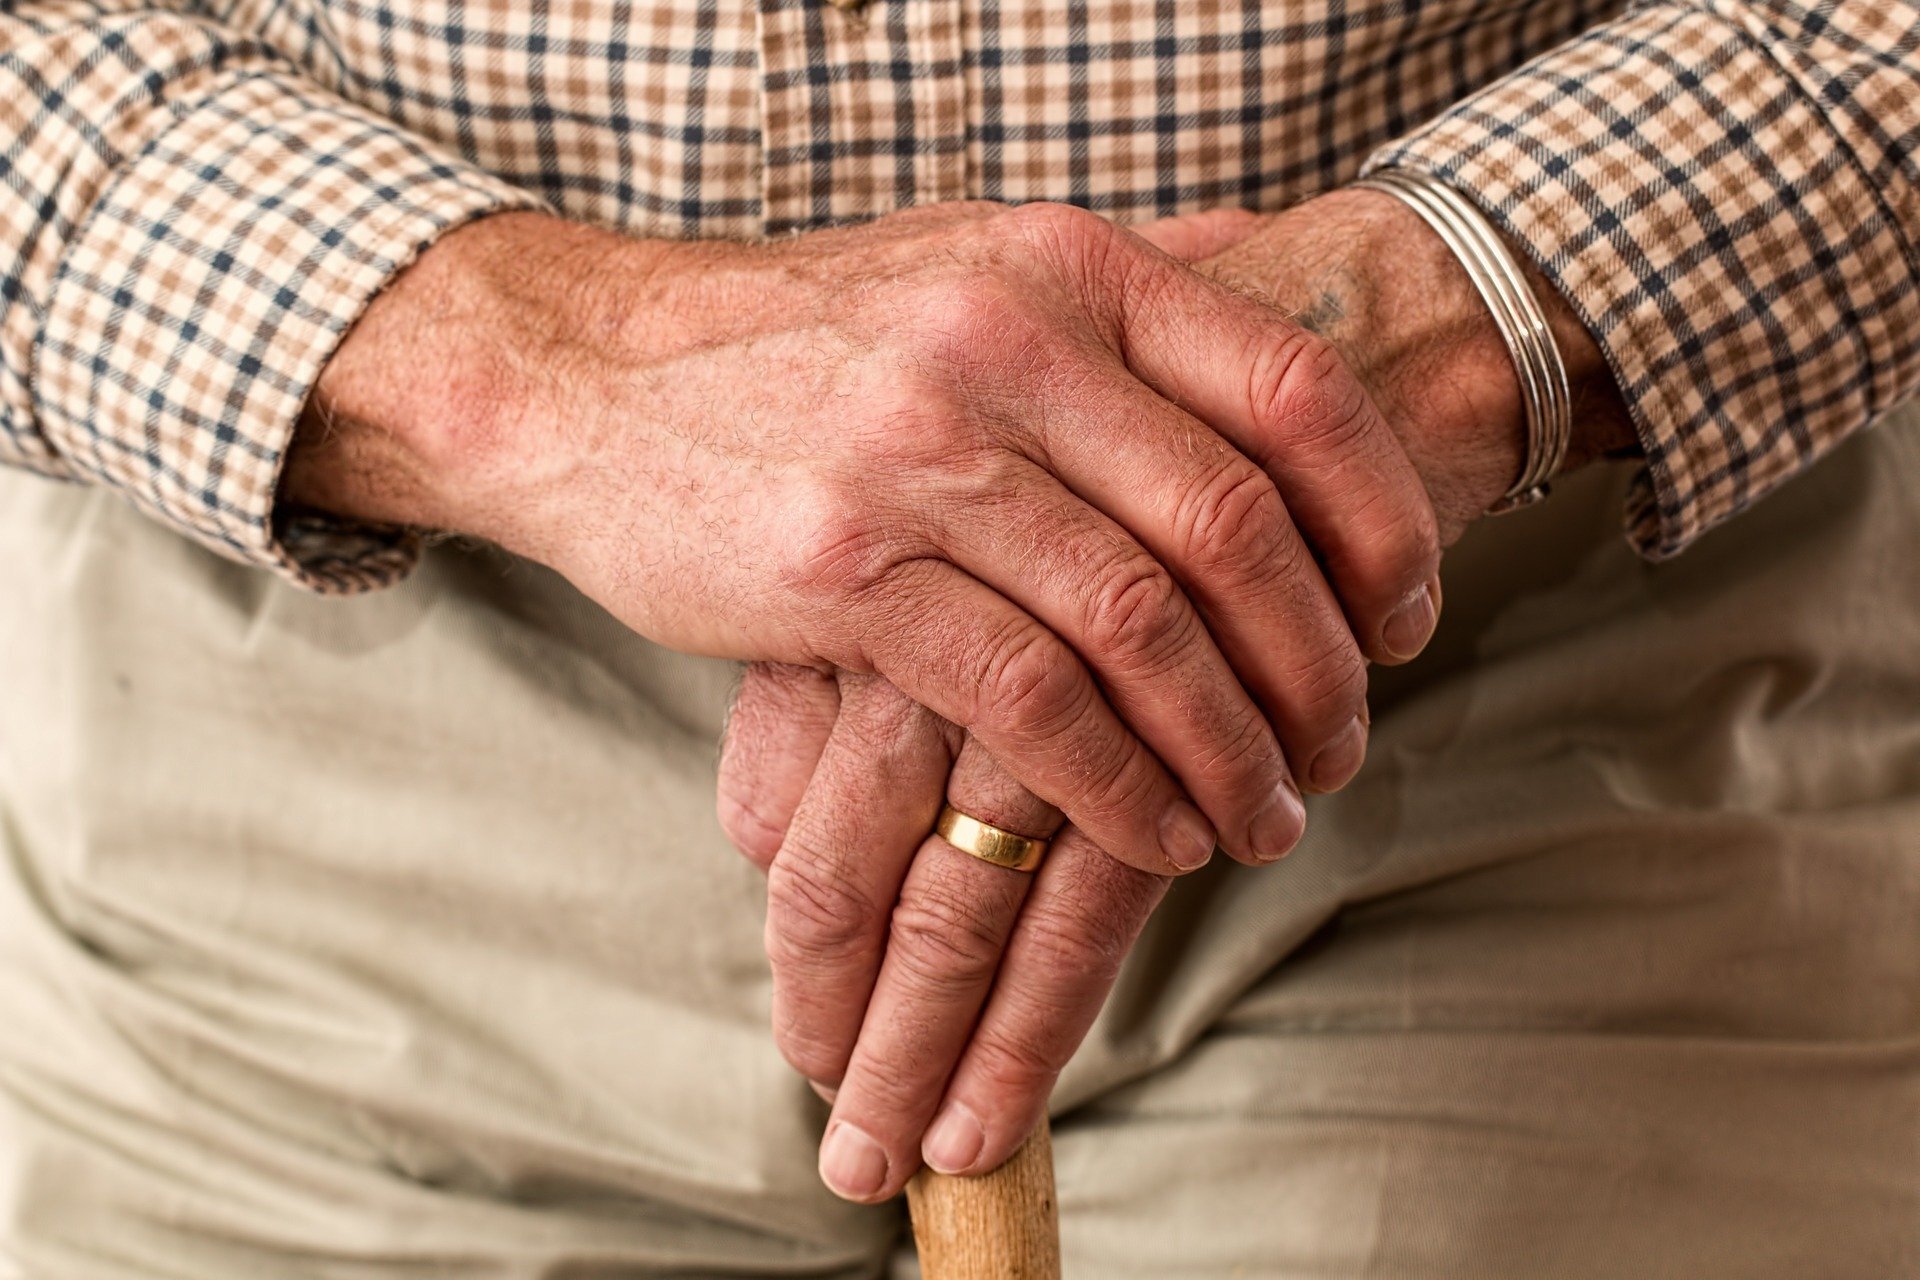 Dementia in Elderly Individuals